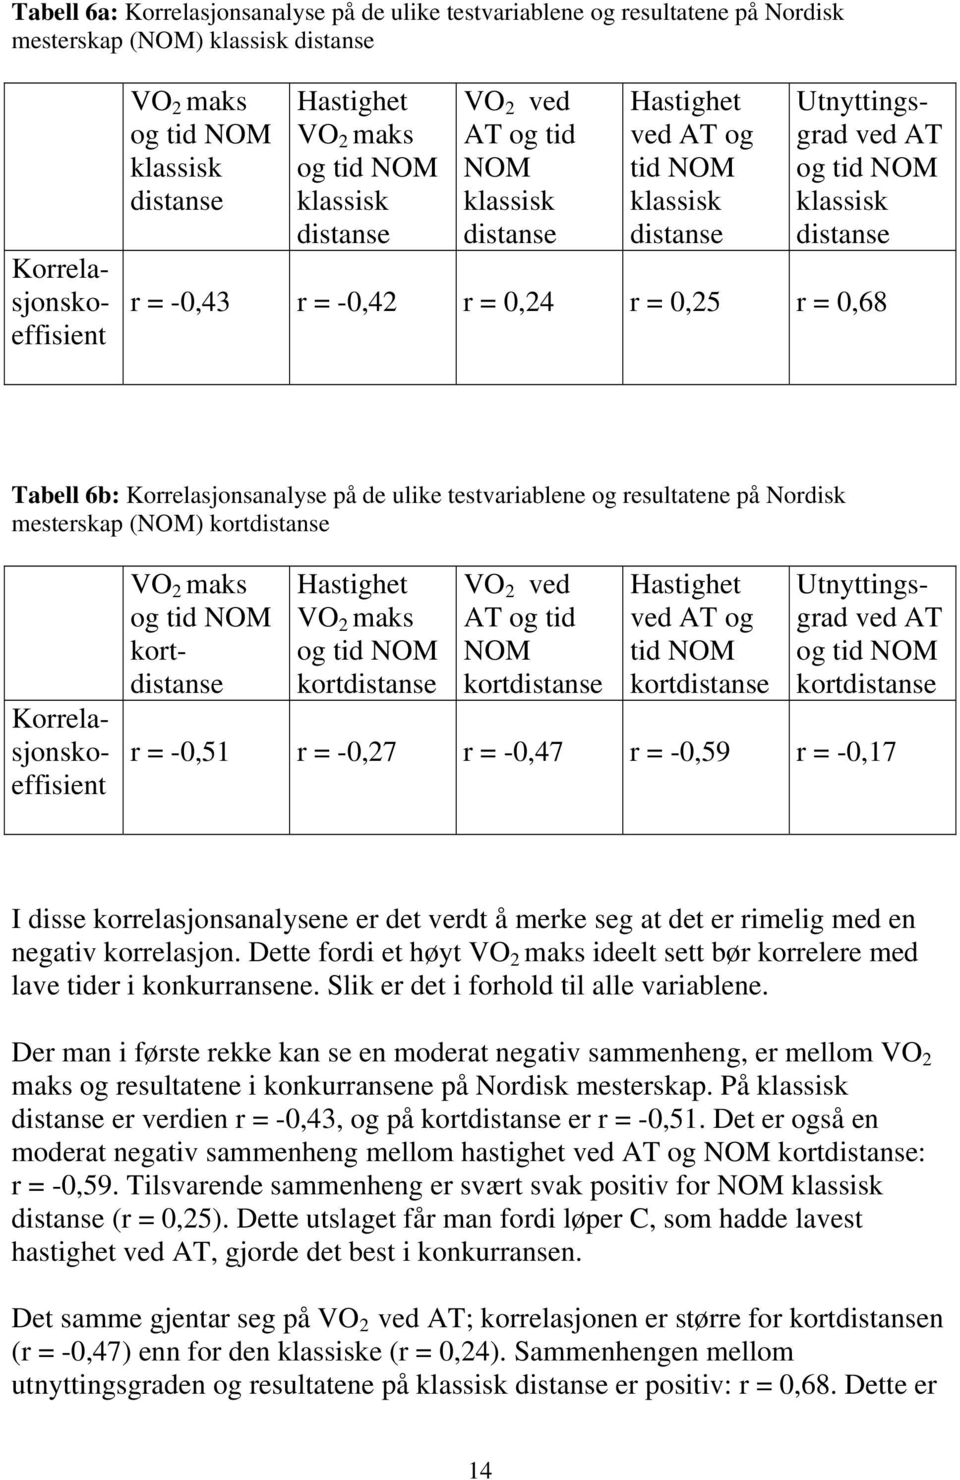 Tabell 6b: Korrelasjonsanalyse på de ulike testvariablene og resultatene på Nordisk mesterskap (NOM) kortdistanse Korrelasjonskoeffisient VO 2 maks og tid NOM kortdistanse Hastighet VO 2 maks og tid